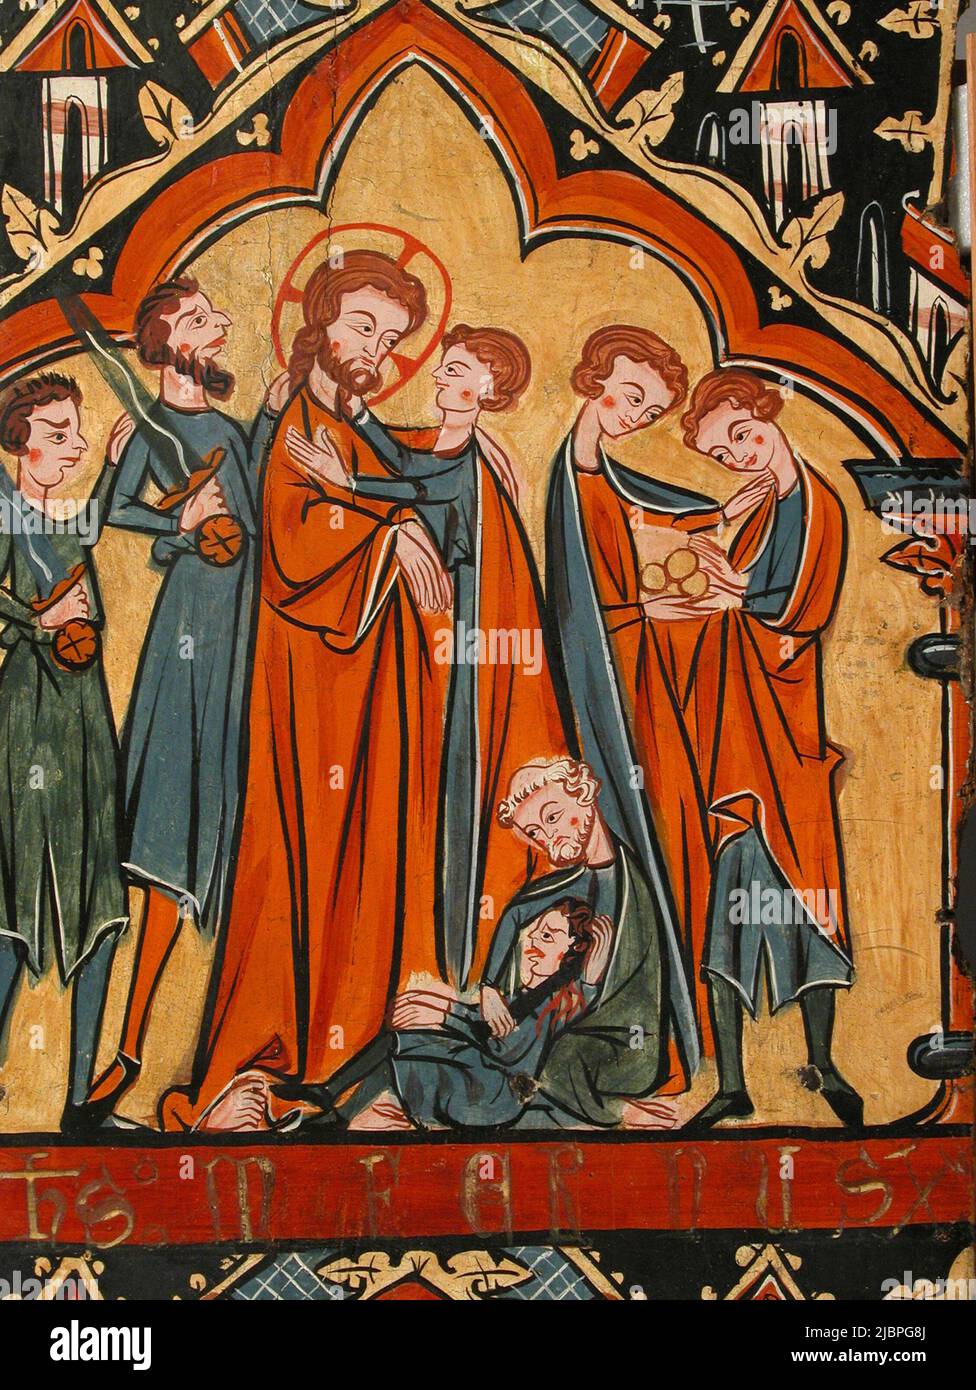 Le Kiss de Judas et l'arrestation du Christ, par un artiste médiéval inconnu Banque D'Images